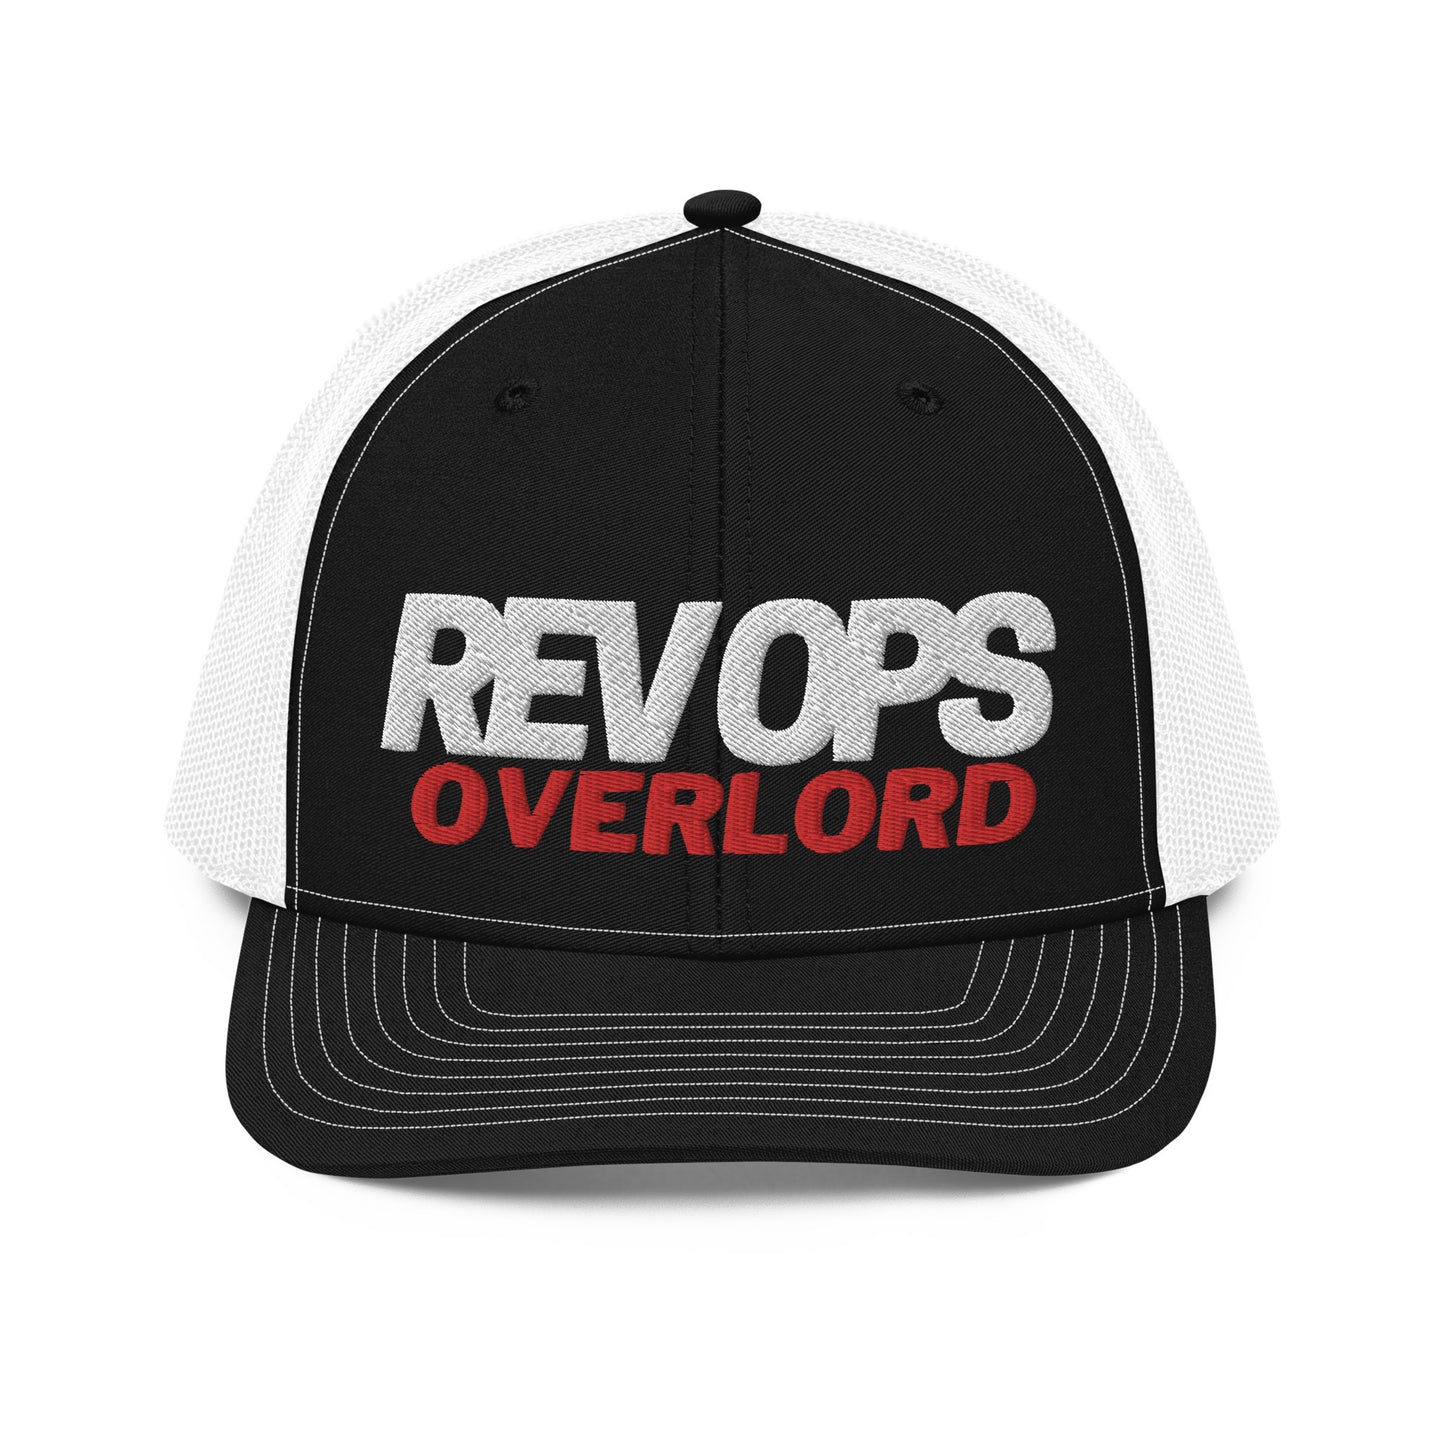 Rev Ops Overlord Mesh Trucker Cap